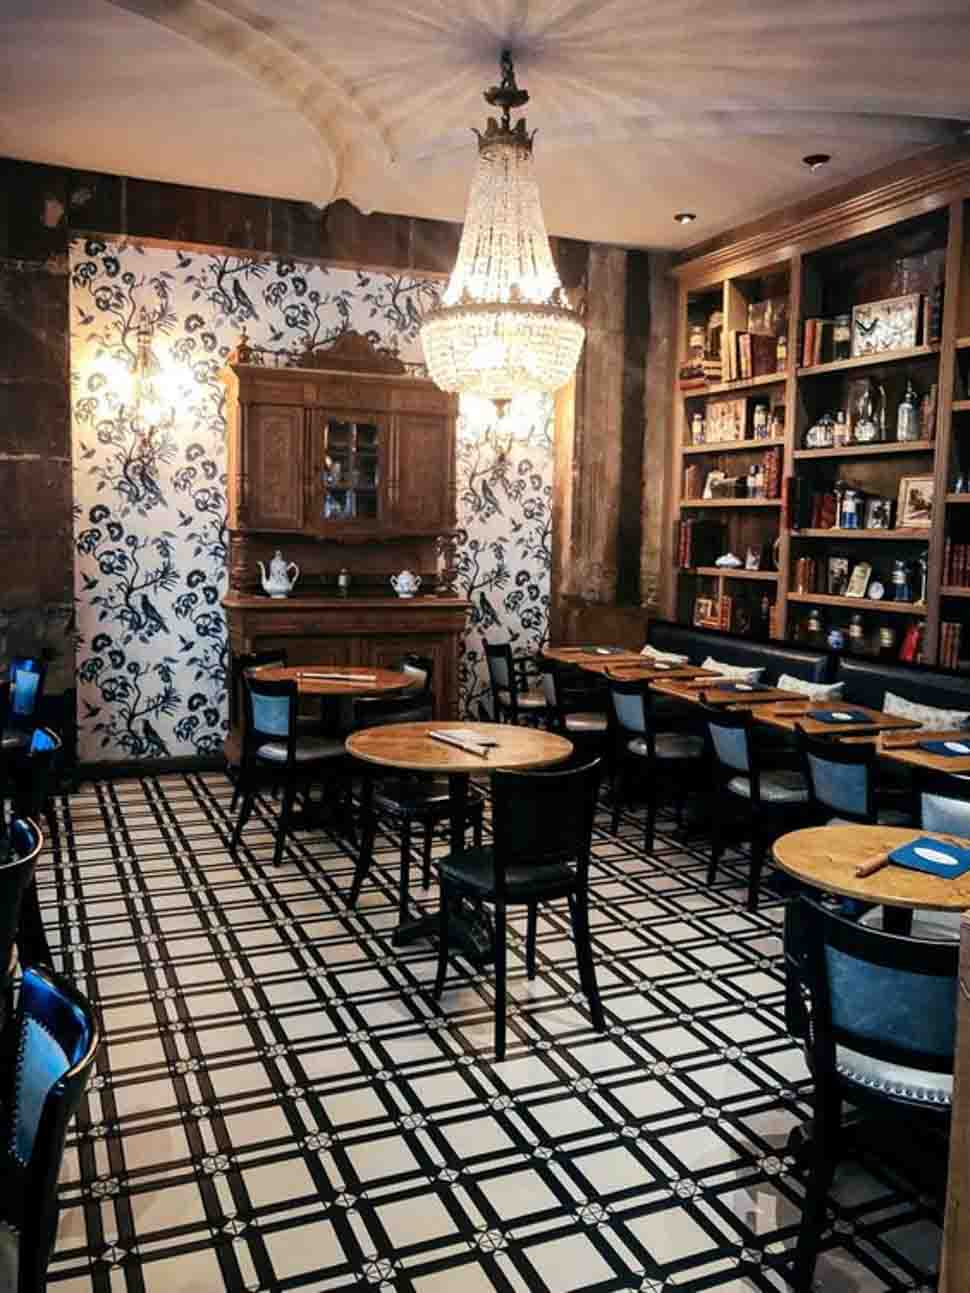 Thiết kế không gian quán cafe cổ điển theo nguyên tắc đối xứng và cân bằng